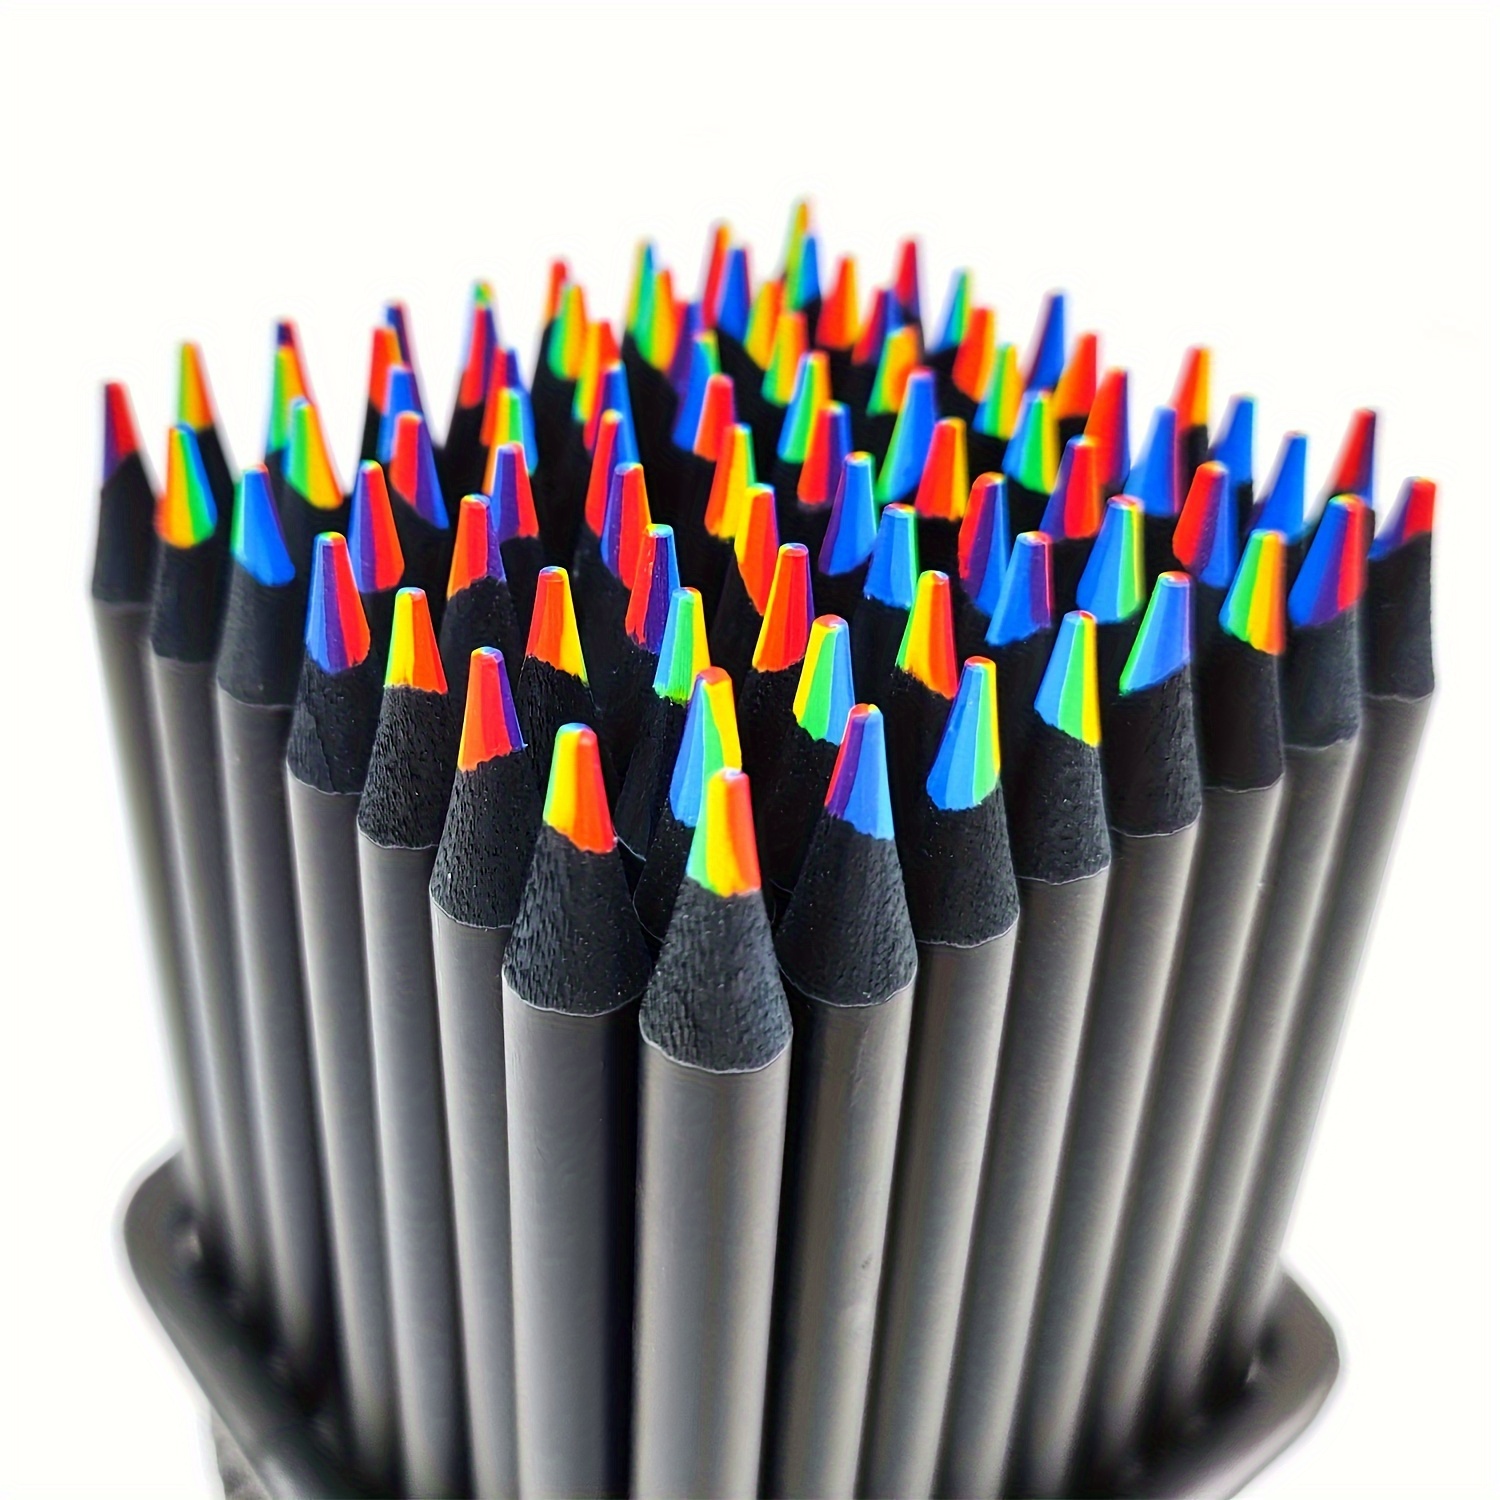 Découverte et Présentation des Crayons de Couleur Arrtx 72 